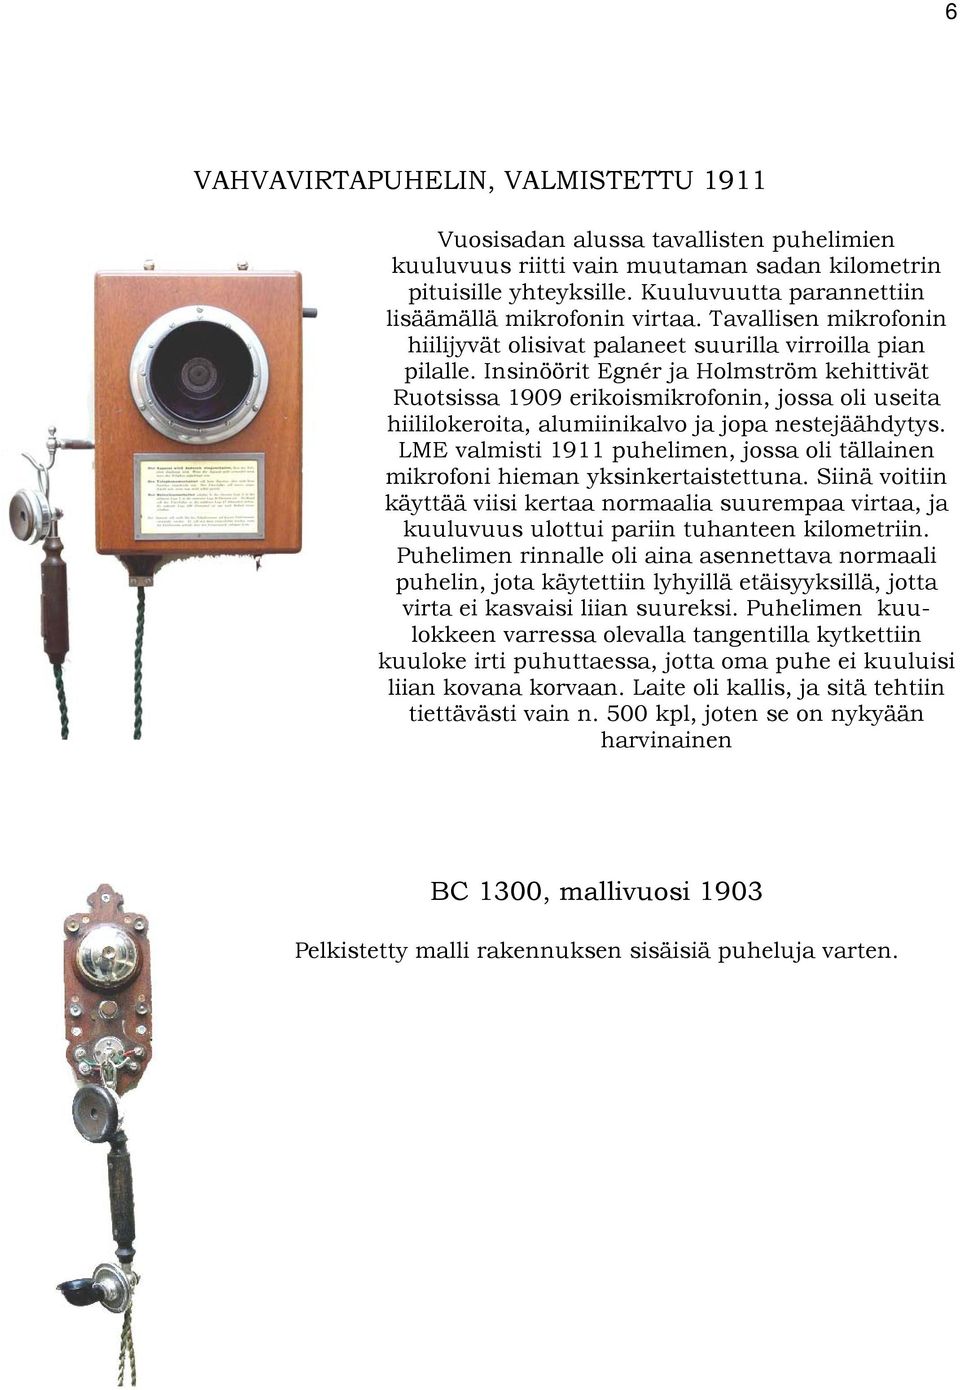 Insinöörit Egnér ja Holmström kehittivät Ruotsissa 1909 erikoismikrofonin, jossa oli useita hiililokeroita, alumiinikalvo ja jopa nestejäähdytys.